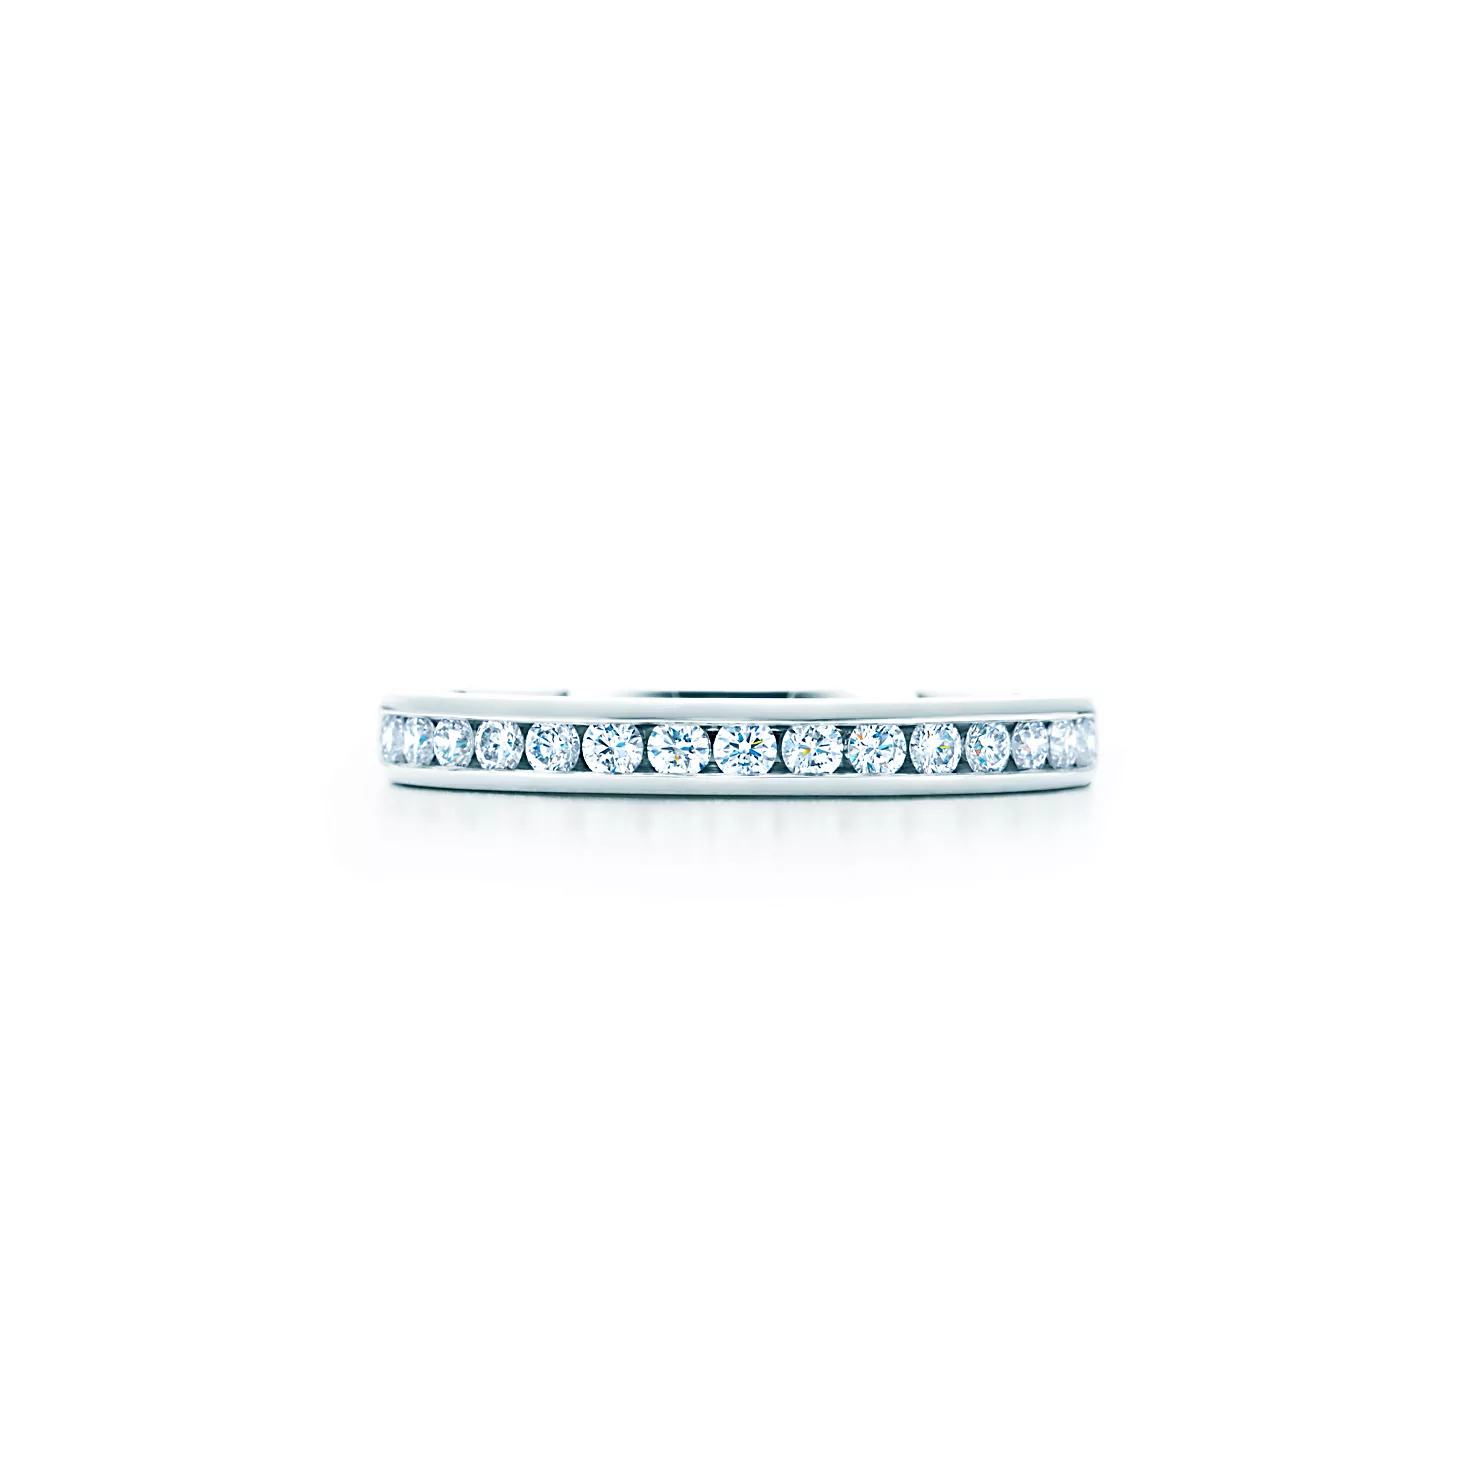 티파니™ 세팅 웨딩 밴드, 플래티늄, 다이아몬드 하프 서클 세팅, 2.5mm 이미지 번호 2